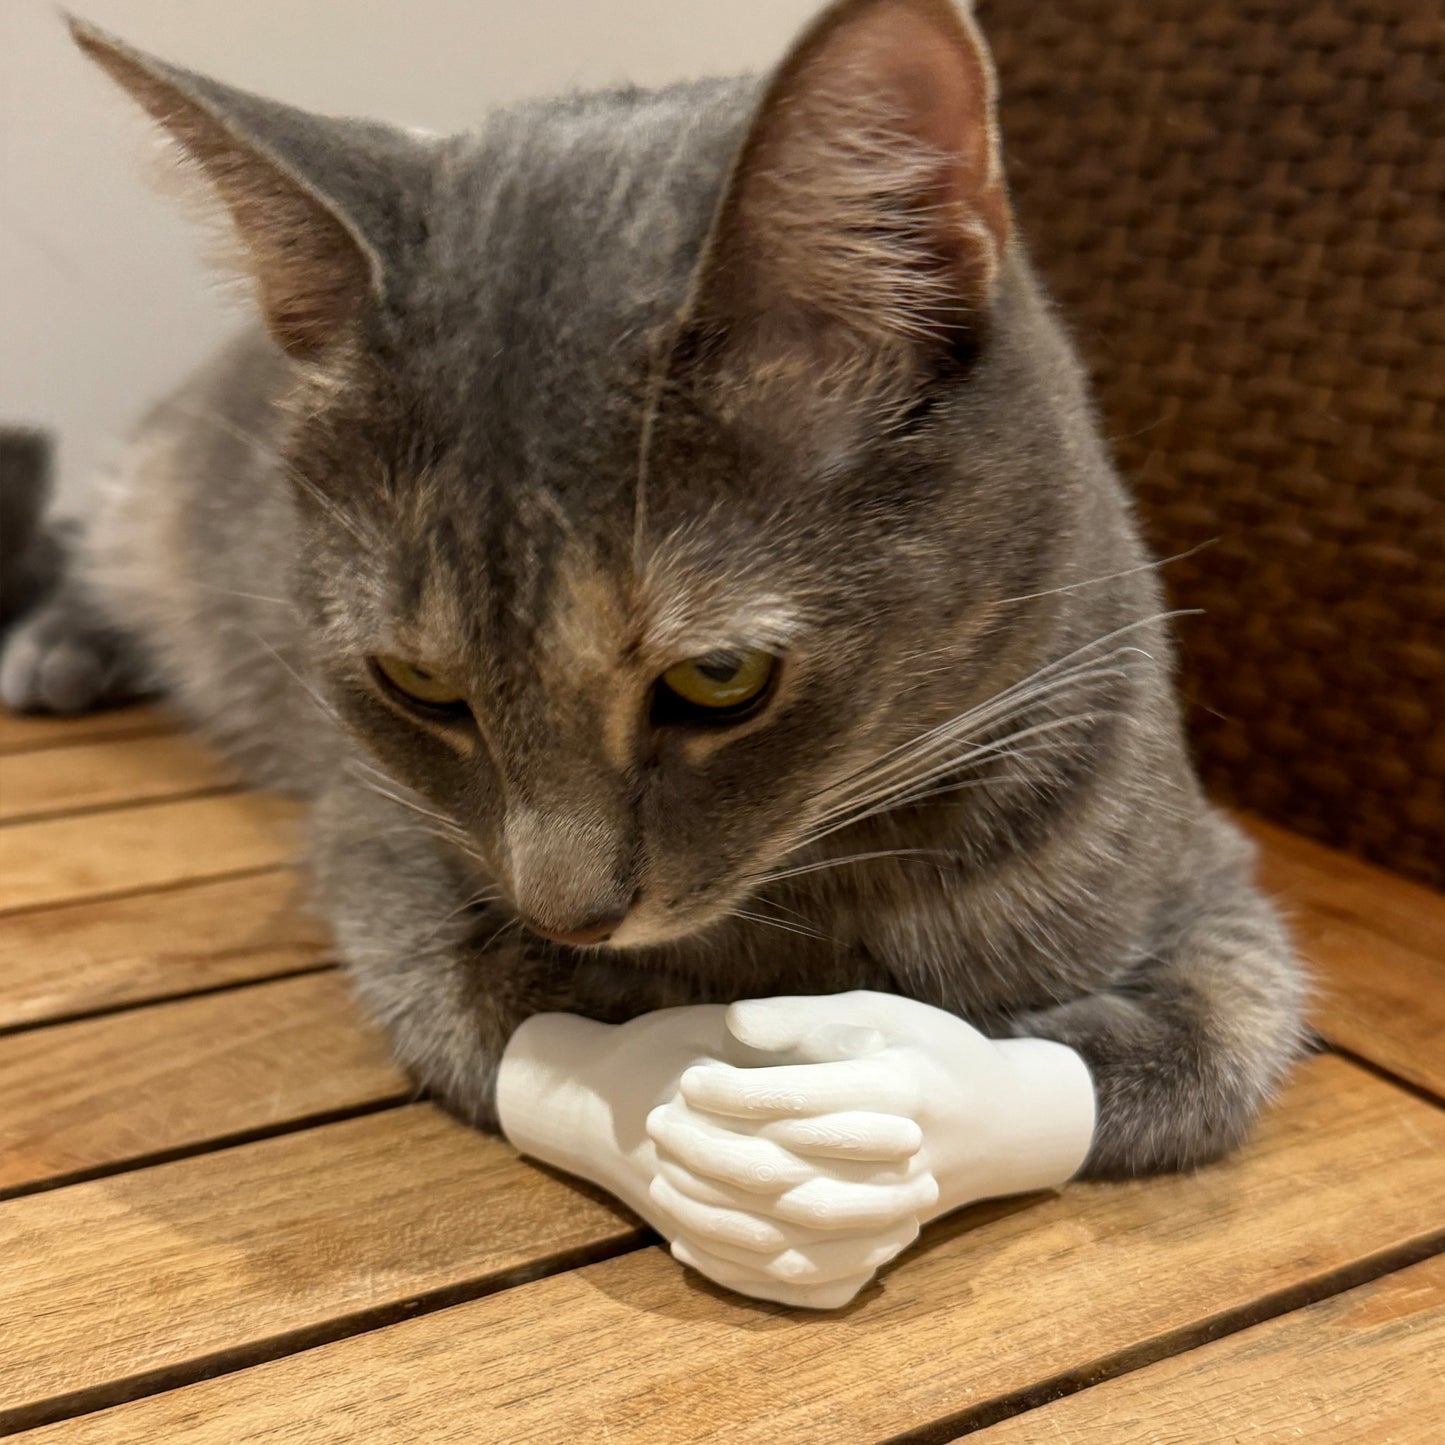 Cat Hands